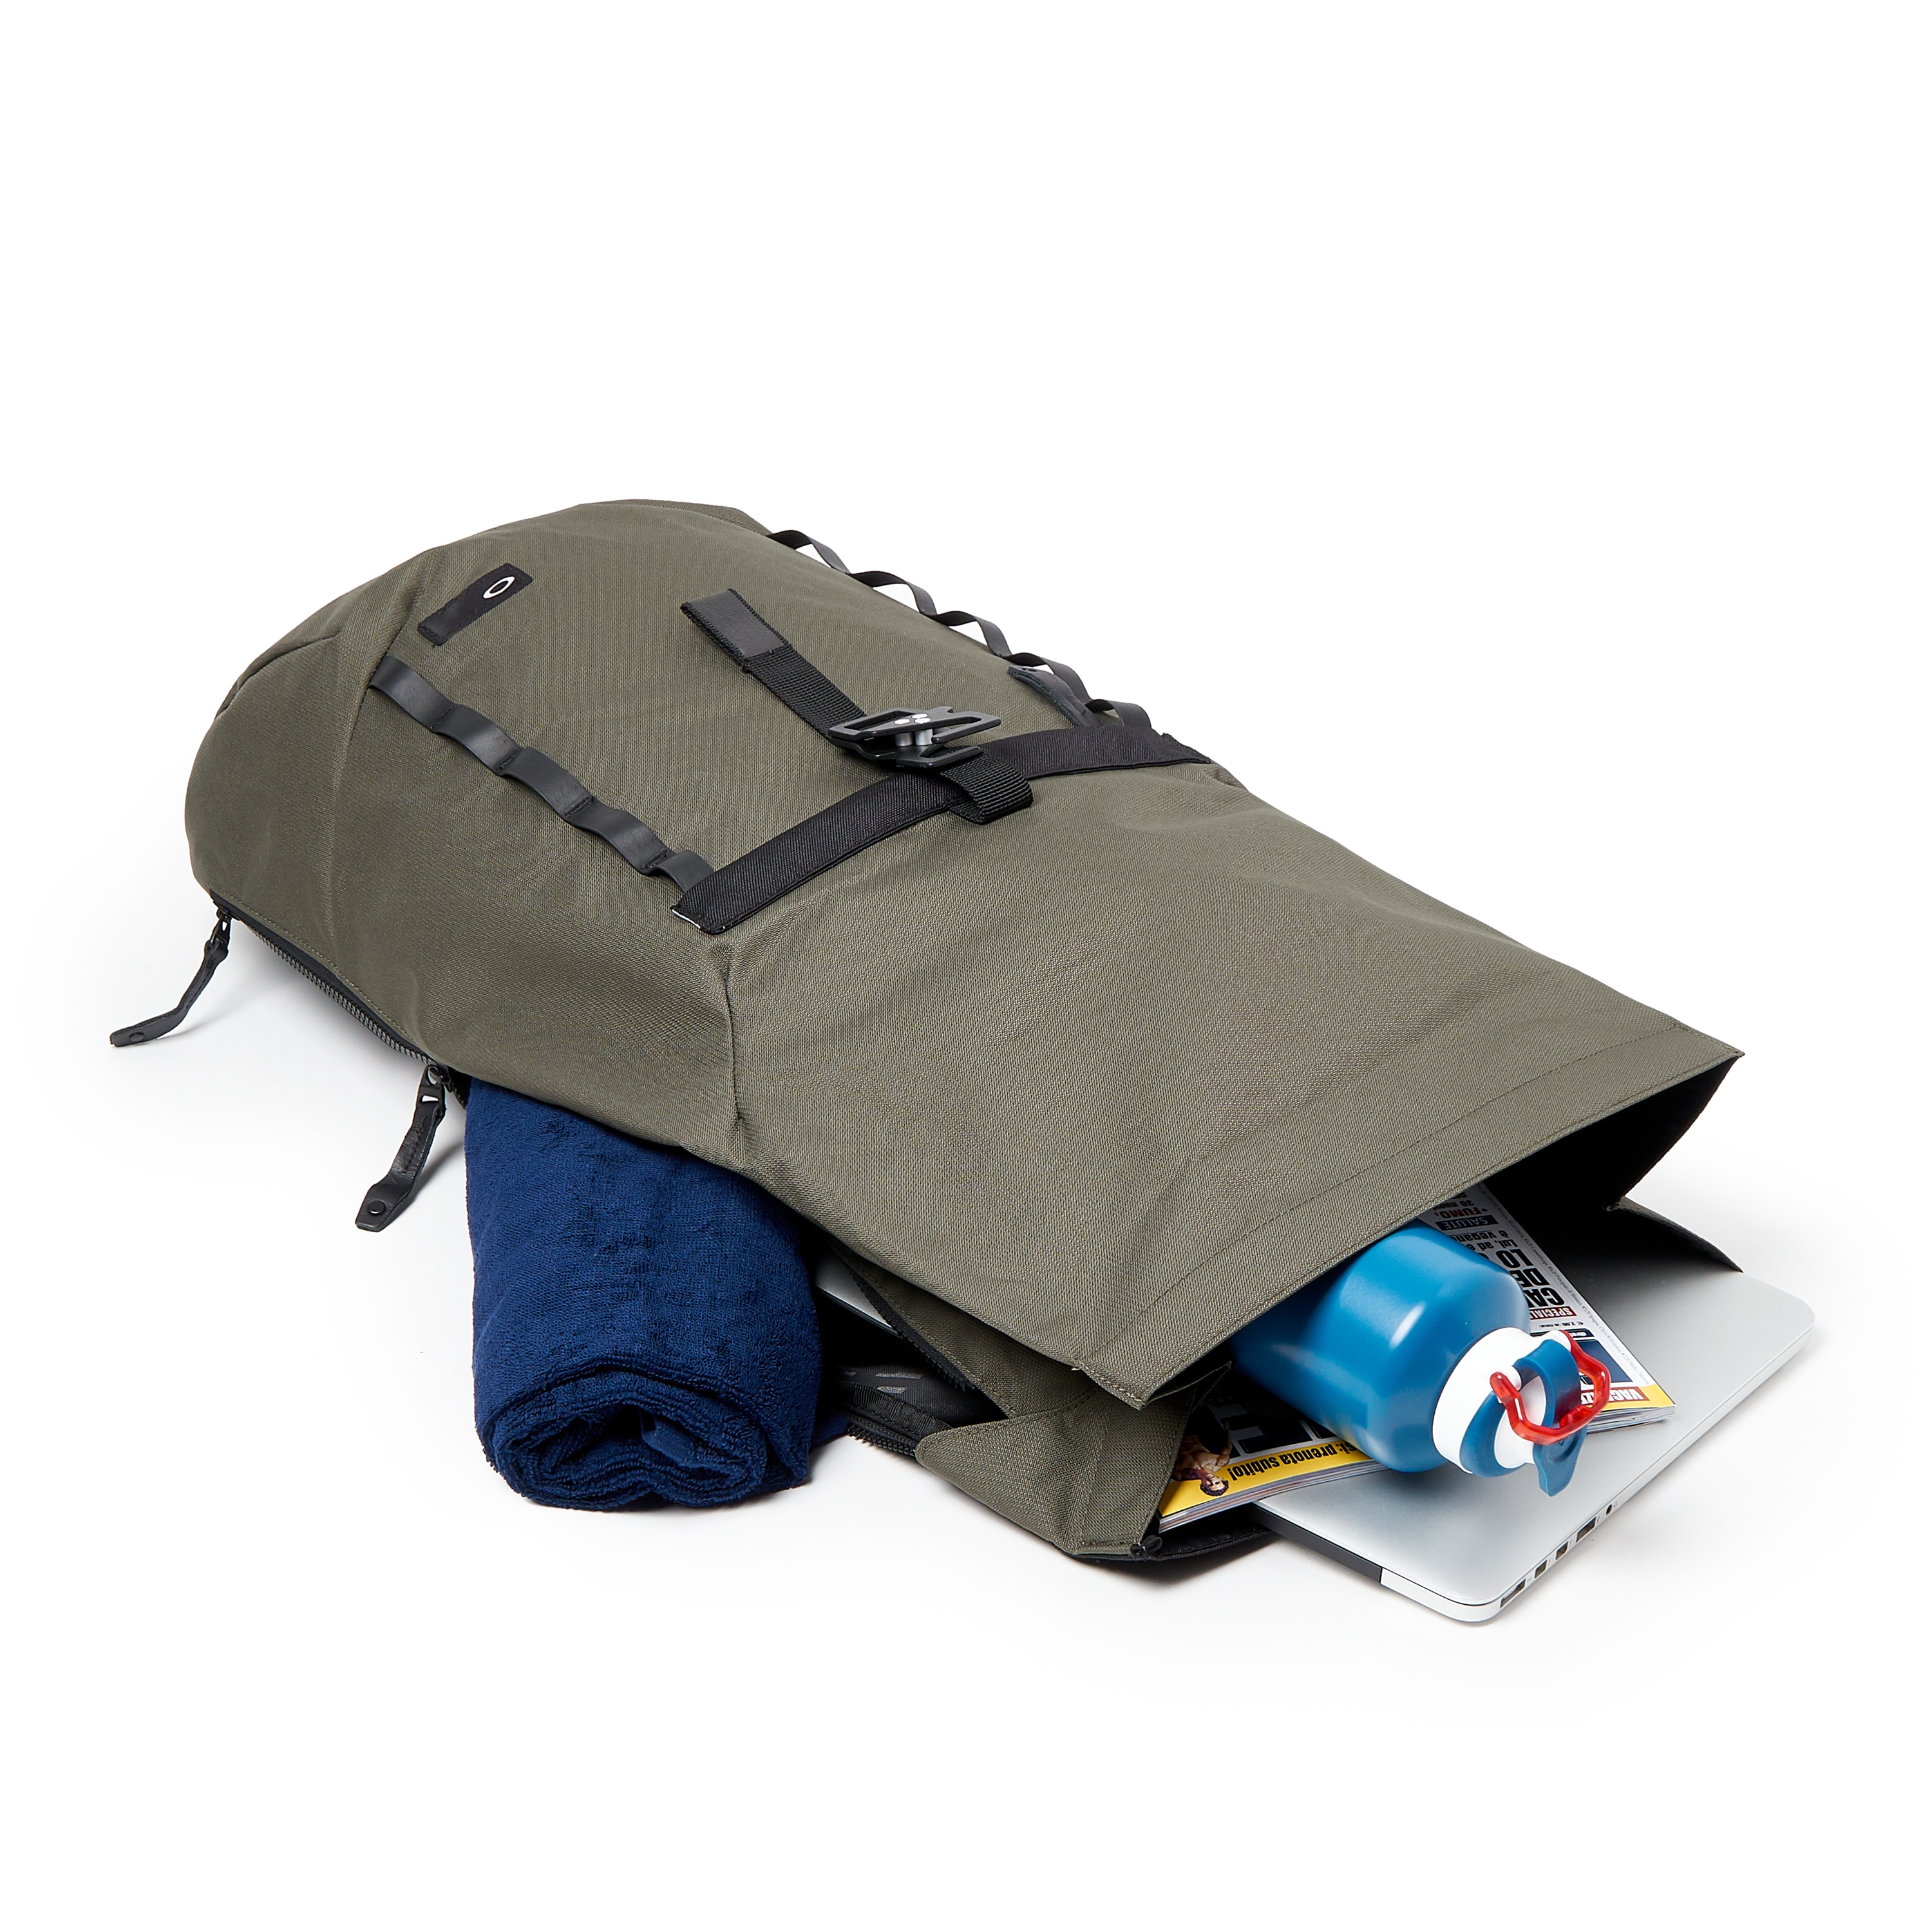 oakley voyage 2.0 backpack